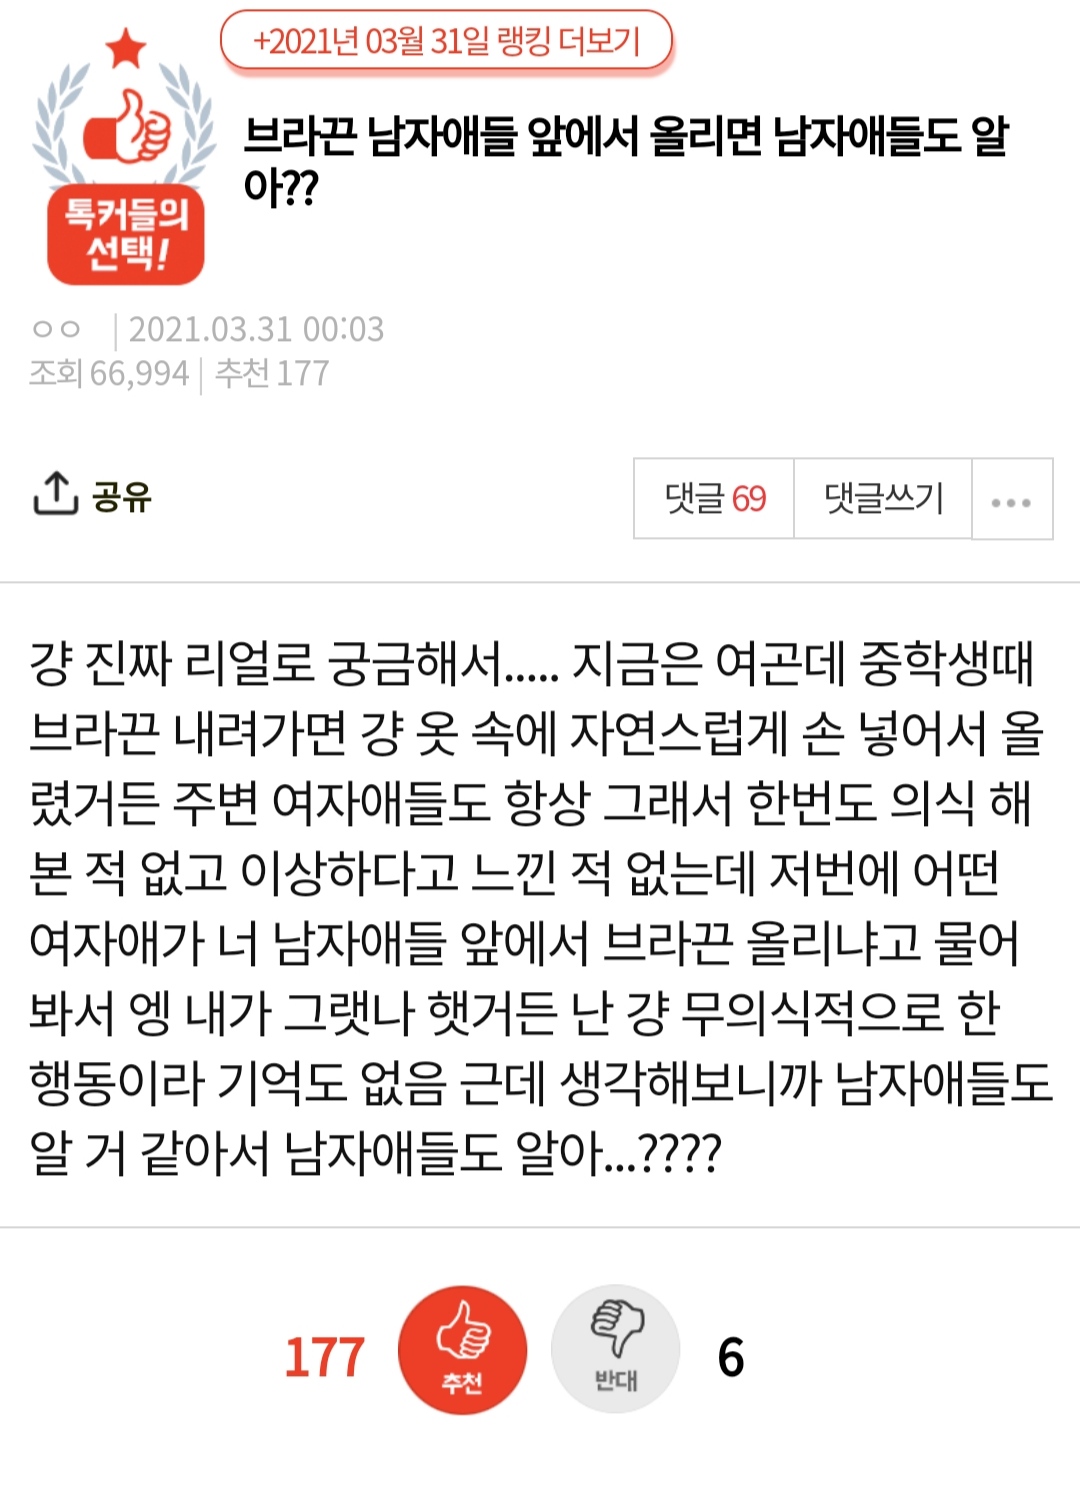 ""남자들 앞에서 브라끈올리면 알아봄?"".jpg